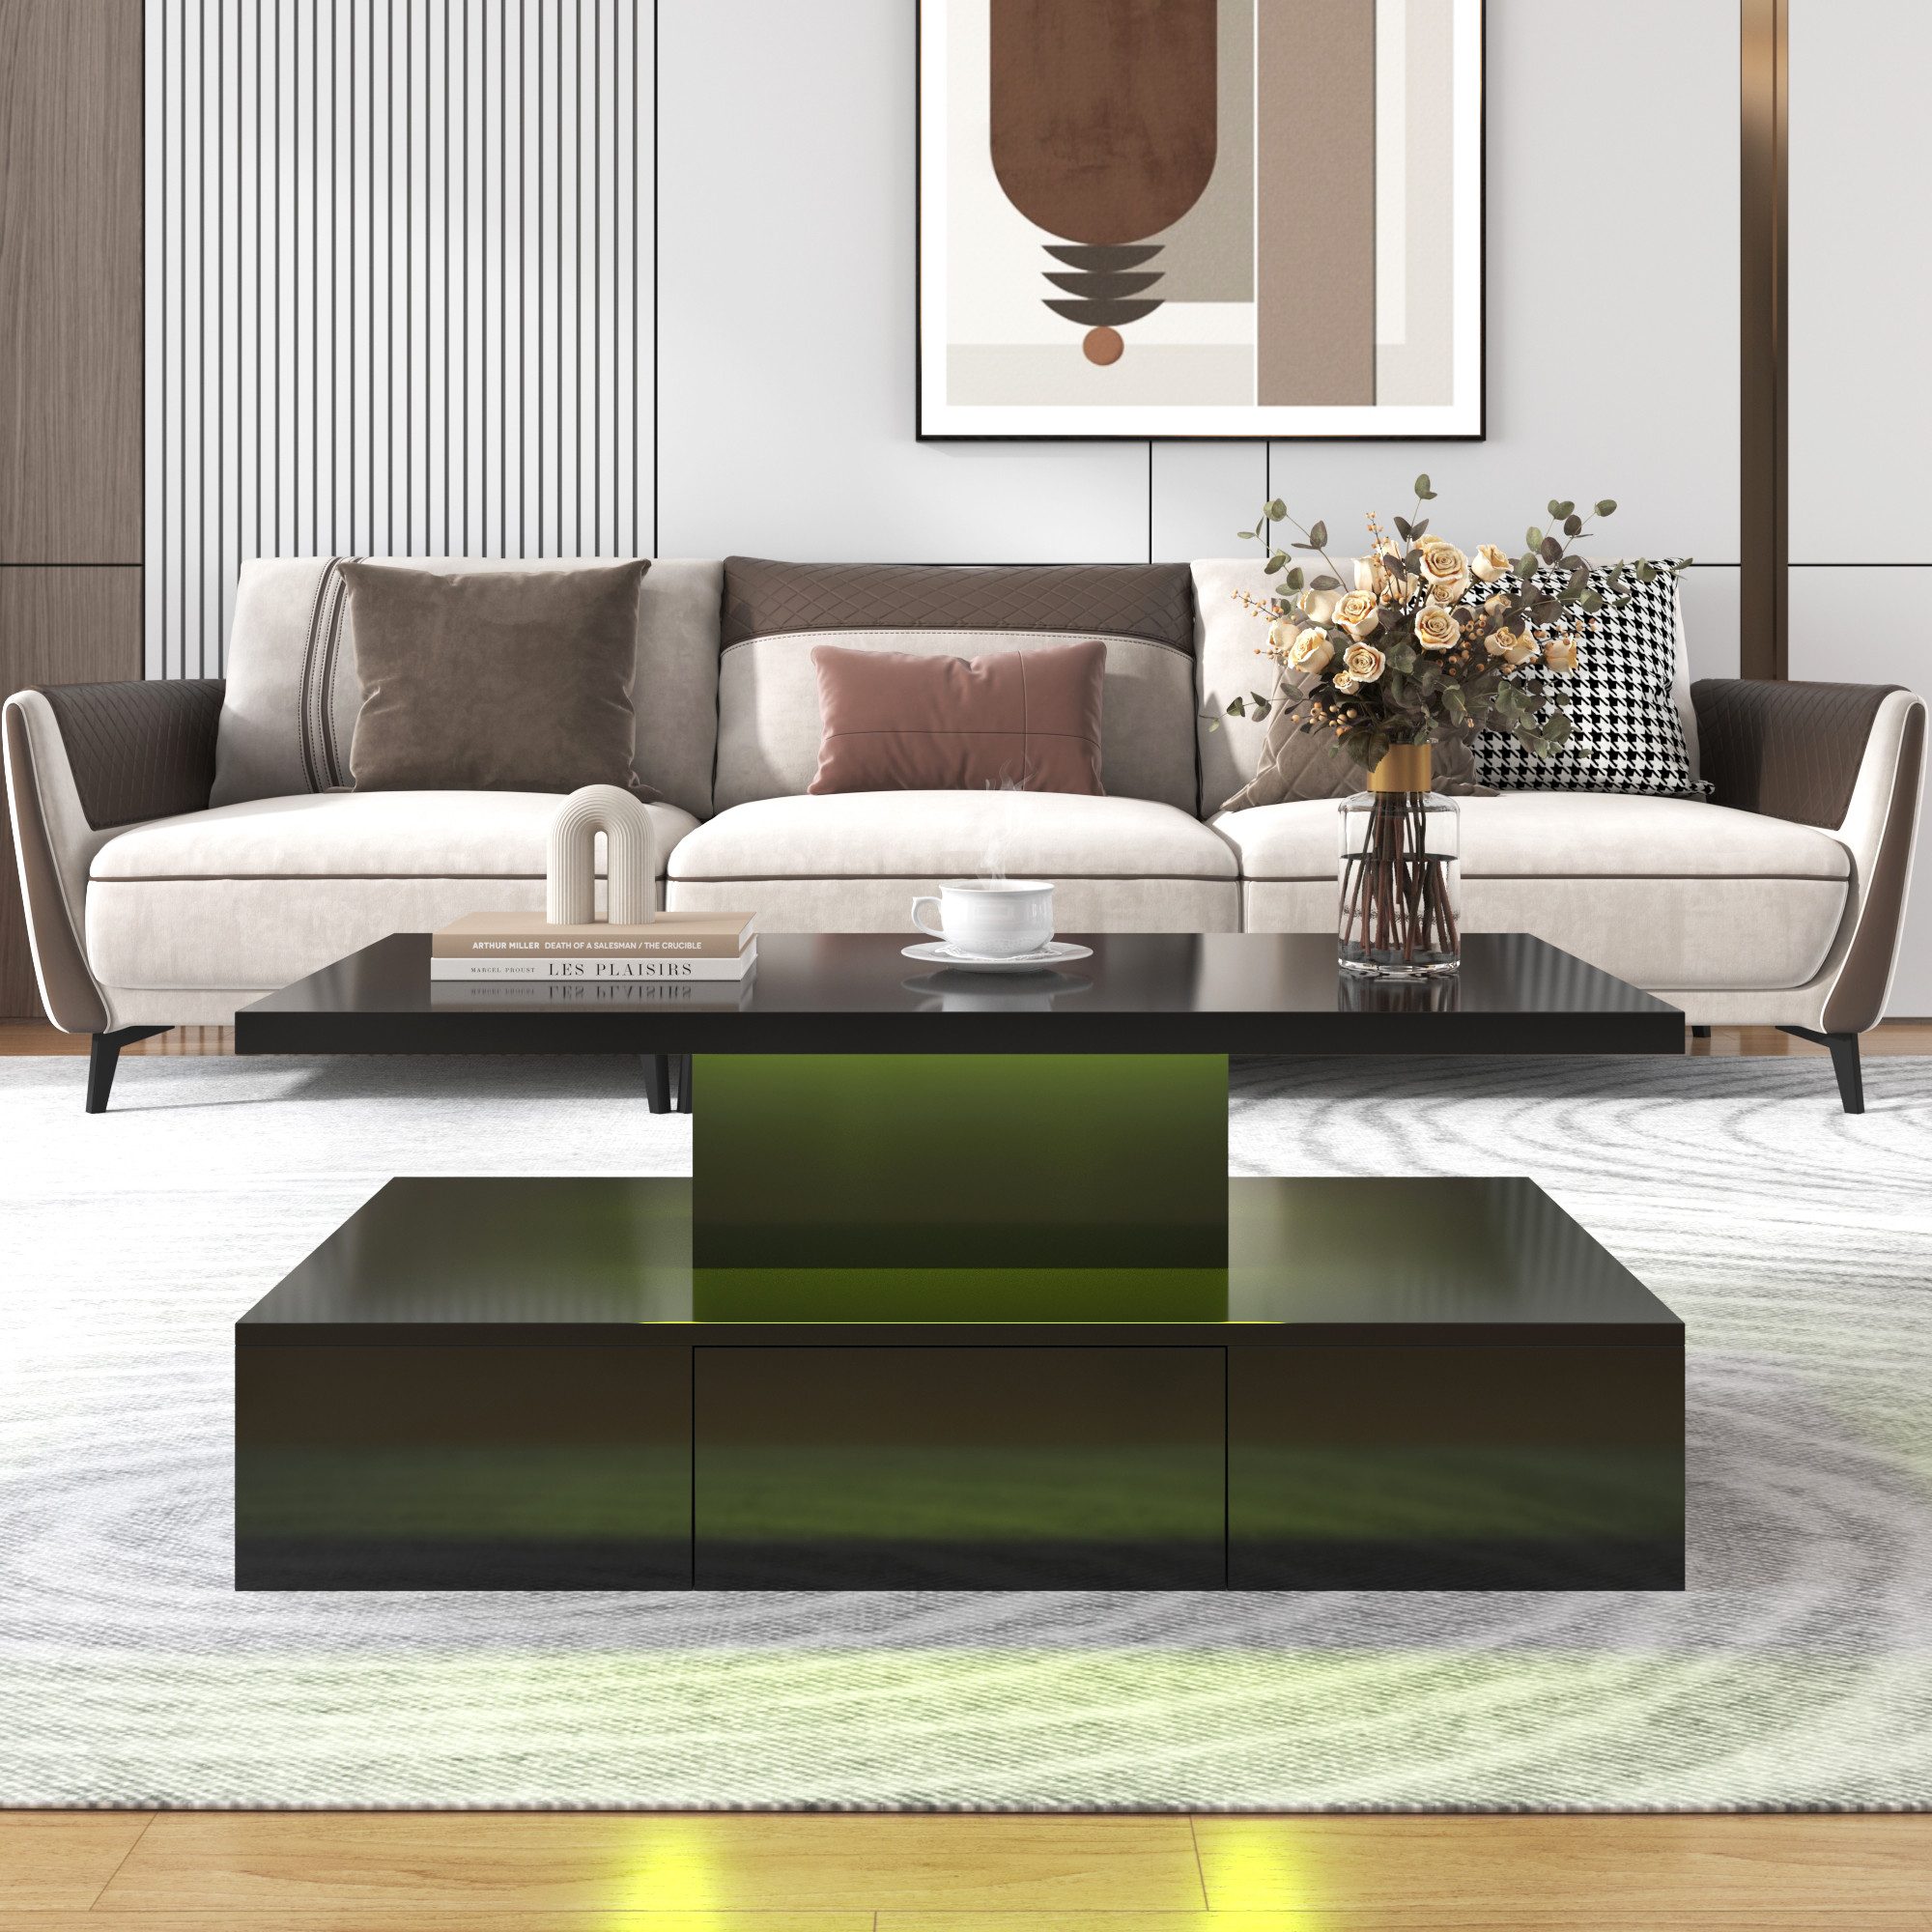 IDEASY Beistelltisch Couchtisch, Büro-Mitteltisch, moderner Beistelltisch, Beistelltisch, 100 x 50 x 39 cm mit 16-Farben-LED-Licht für Wohnzimmer